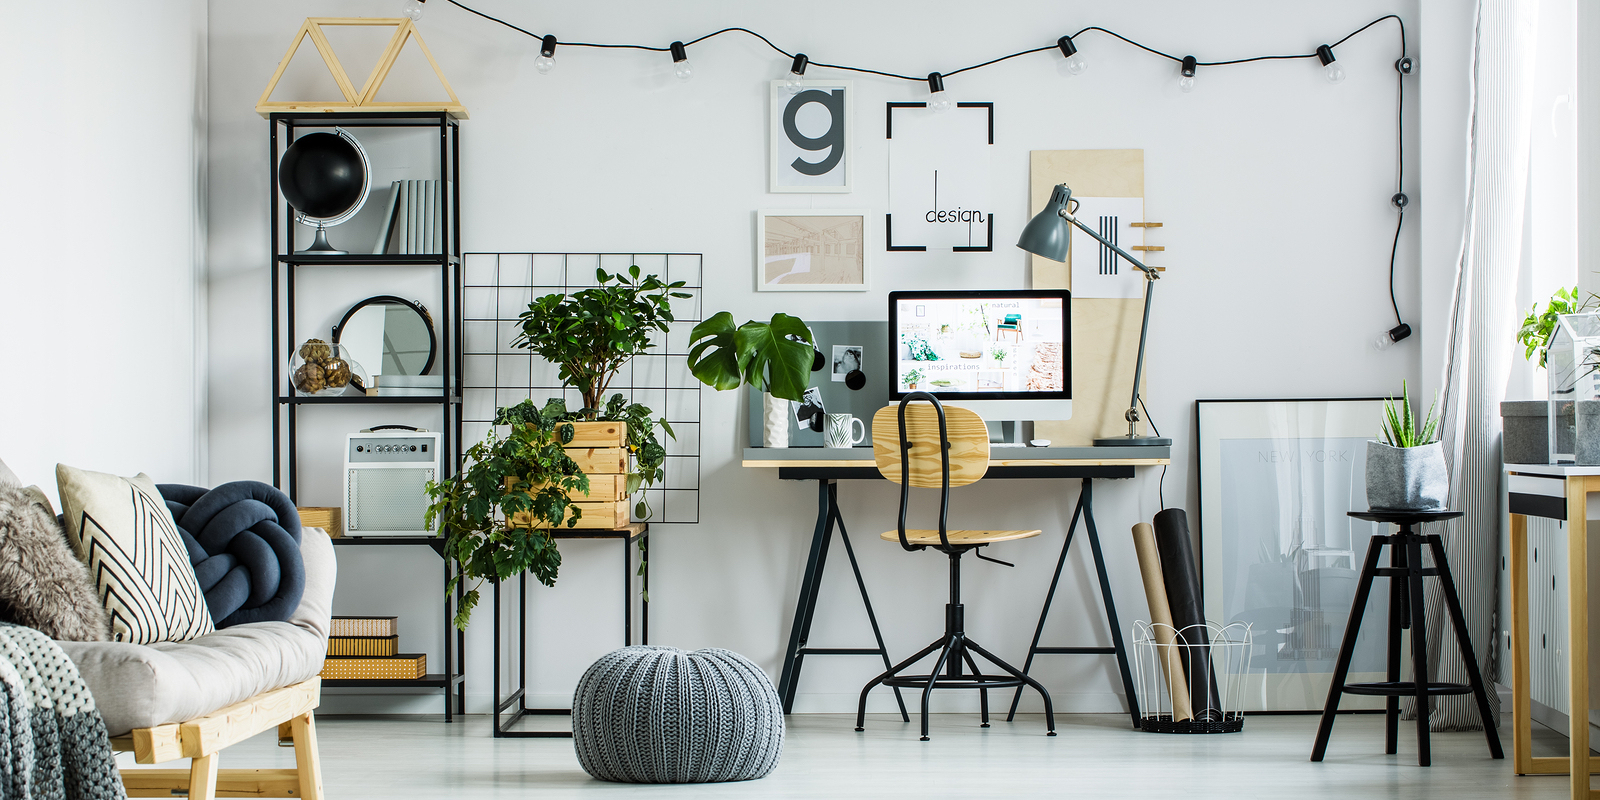 Oficina en casa: ideas para crear un espacio eficiente y cómodo